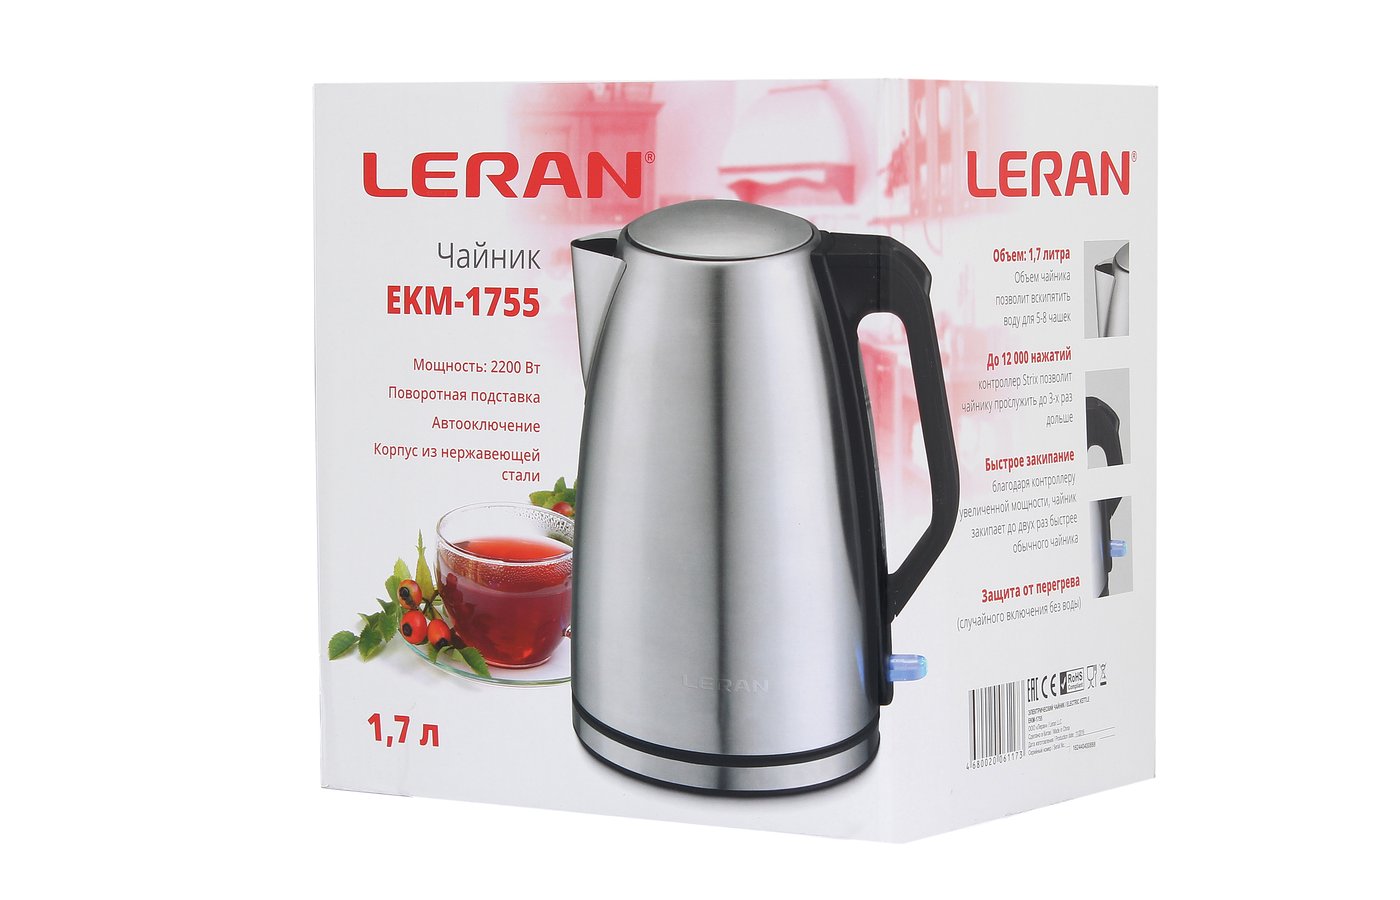 Леран производитель отзывы. Чайник электрический Леран. Чайник Leran Ekm-1755. Leran чайник Ekm. Электрический чайник ECON Eco-1881ke,.